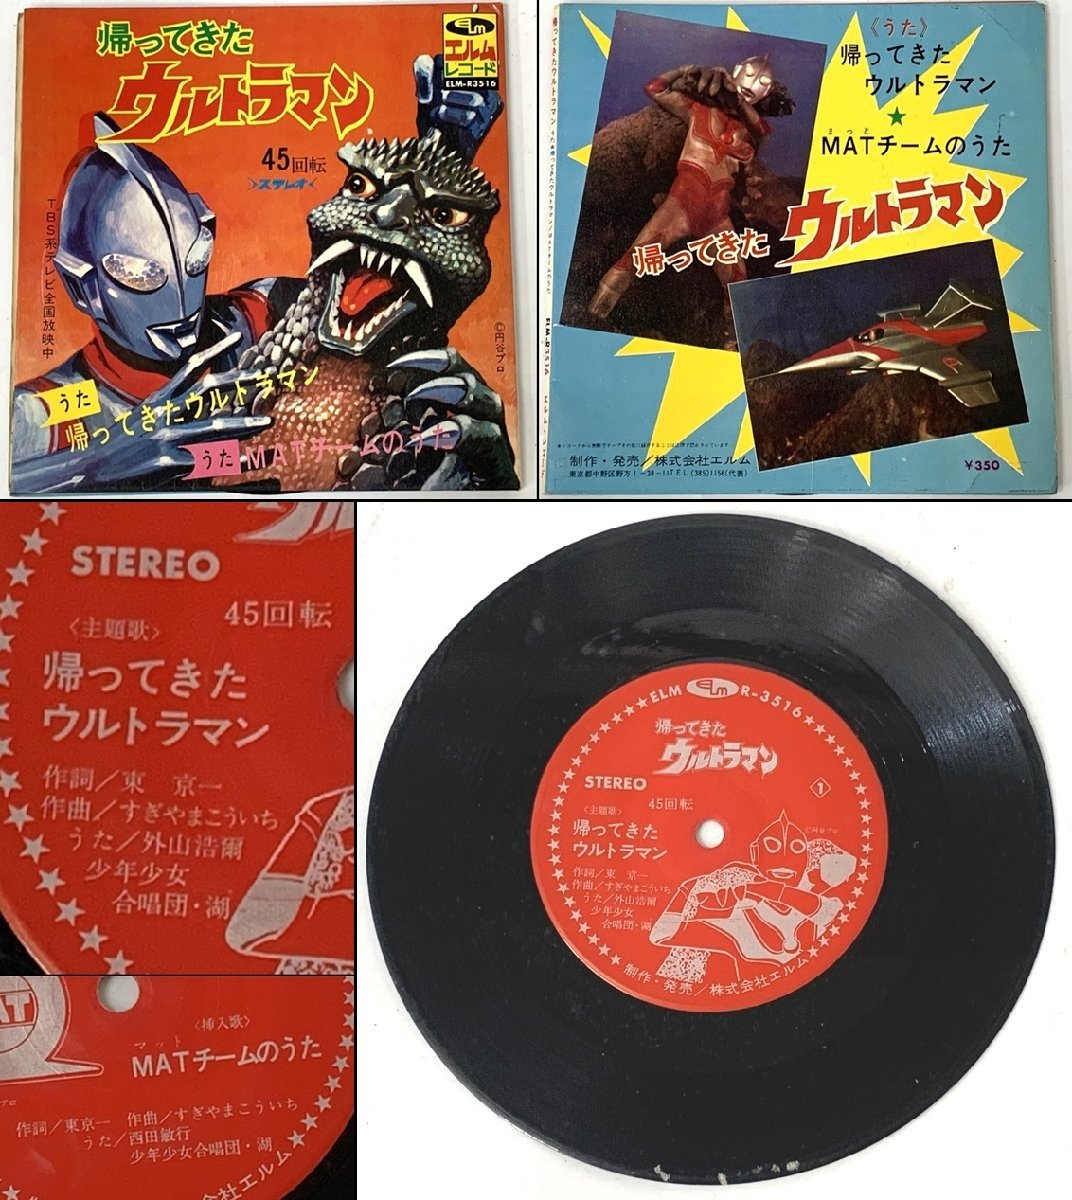 * (3) монстр .. Return of Ultraman подвеска ke. предмет kun Star of the Giants др. LP EP запись пончики запись совместно комплект подлинная вещь manga (манга) тематическая песня и т.п. 